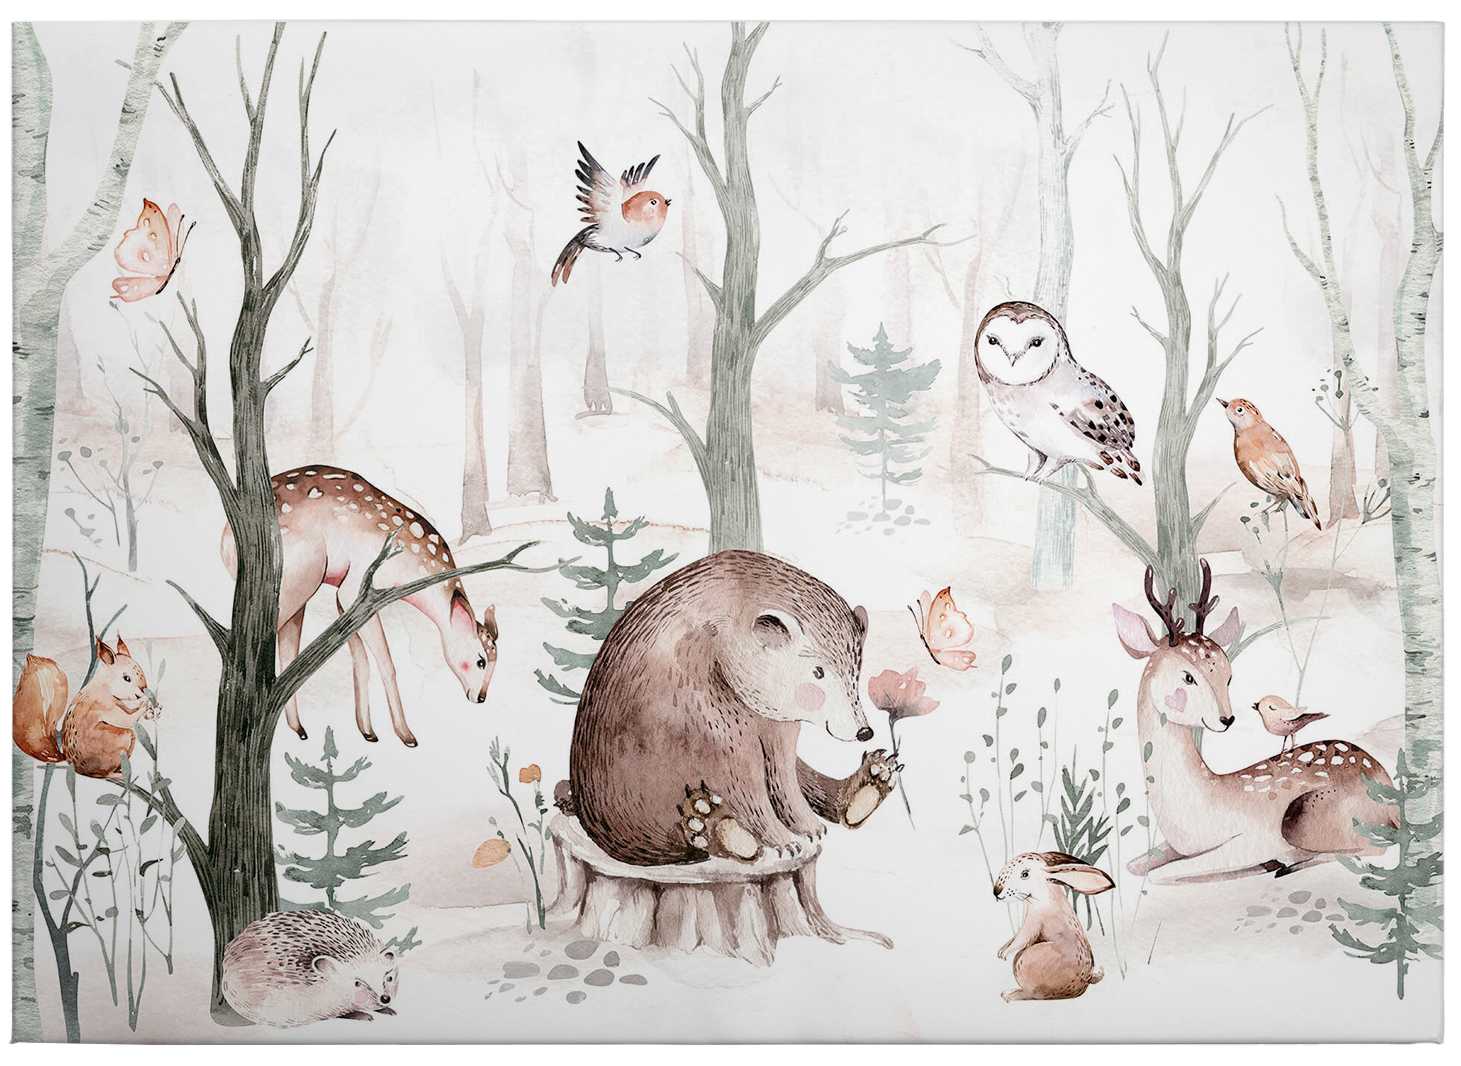             Quadro su tela Animali della foresta Motivo bambino acquerellato di Kvilis - 0,70 m x 0,50 m
        